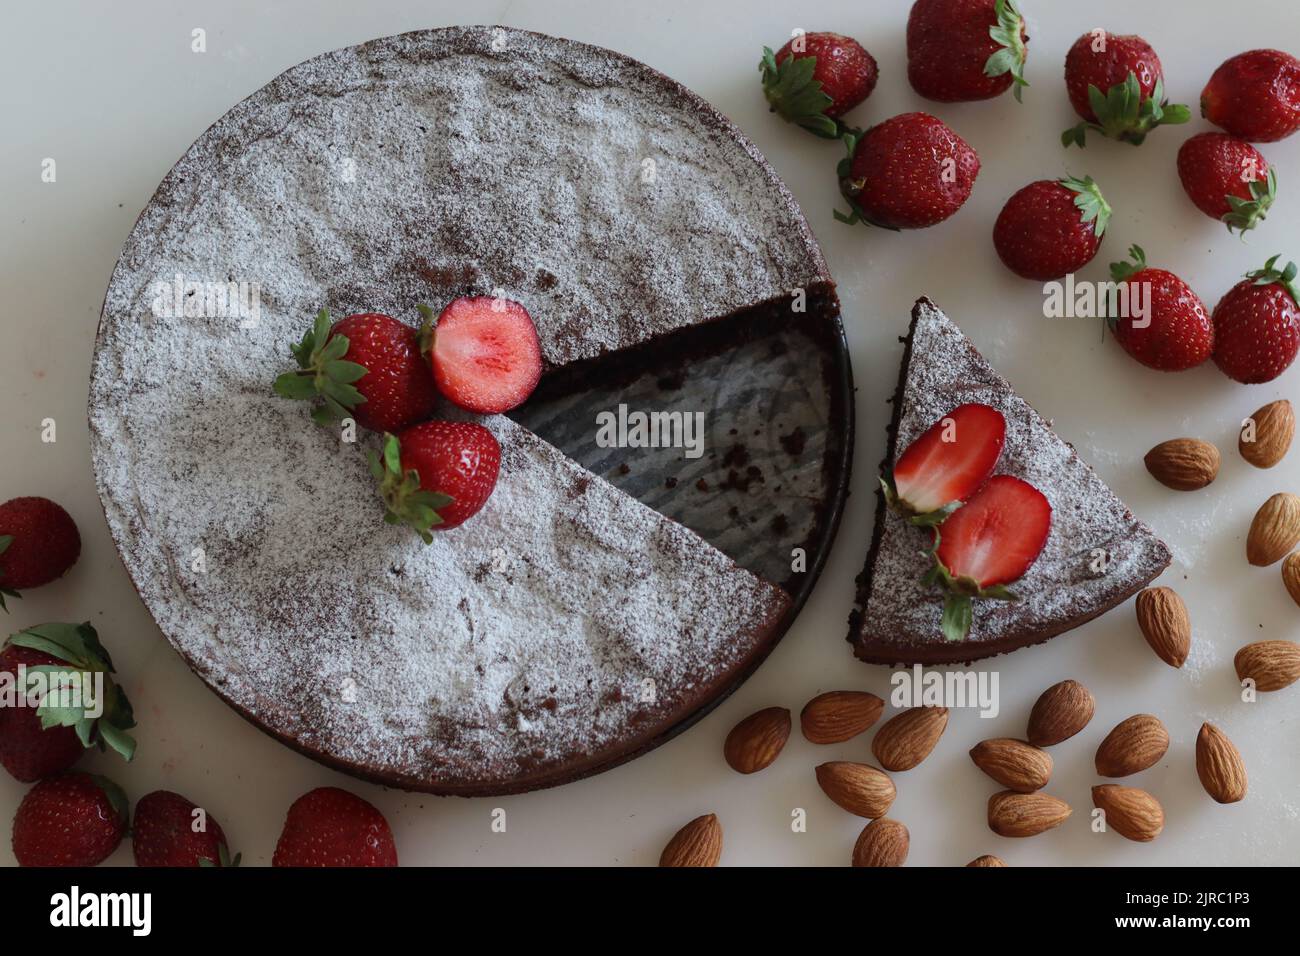 Tortenkaprese in Scheiben. Schokolade- und Mandelkuchen. Ein leckerer, schokoladiger, mehlloser Kuchen von der italienischen Insel Capri. Mit Zuckerpulver bestreut. Stockfoto